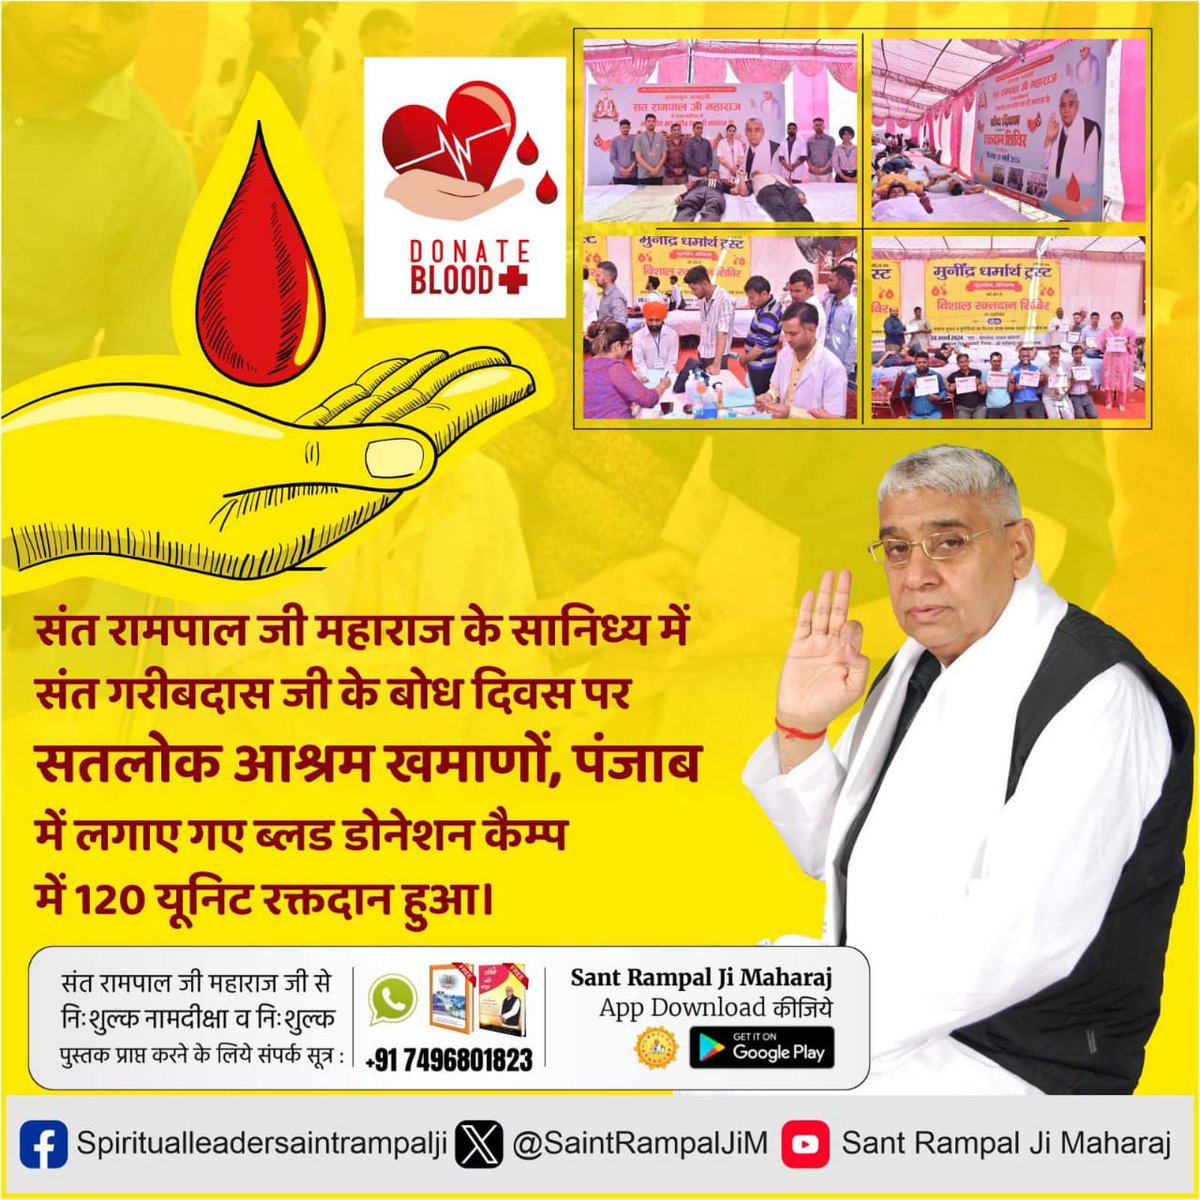 #SaveLives_DonateBlood रक्तदान महादान संत रामपाल जी के सानिध्य में उनके अनुयायियों ने संत गरीब दास जी महाराज बोध दिवस पर हज़ारों यूनिट रक्त दान किया ताकि जरूरतमंद को रक्त उपलब्ध हो सके। Followers Of Sant Rampal Ji